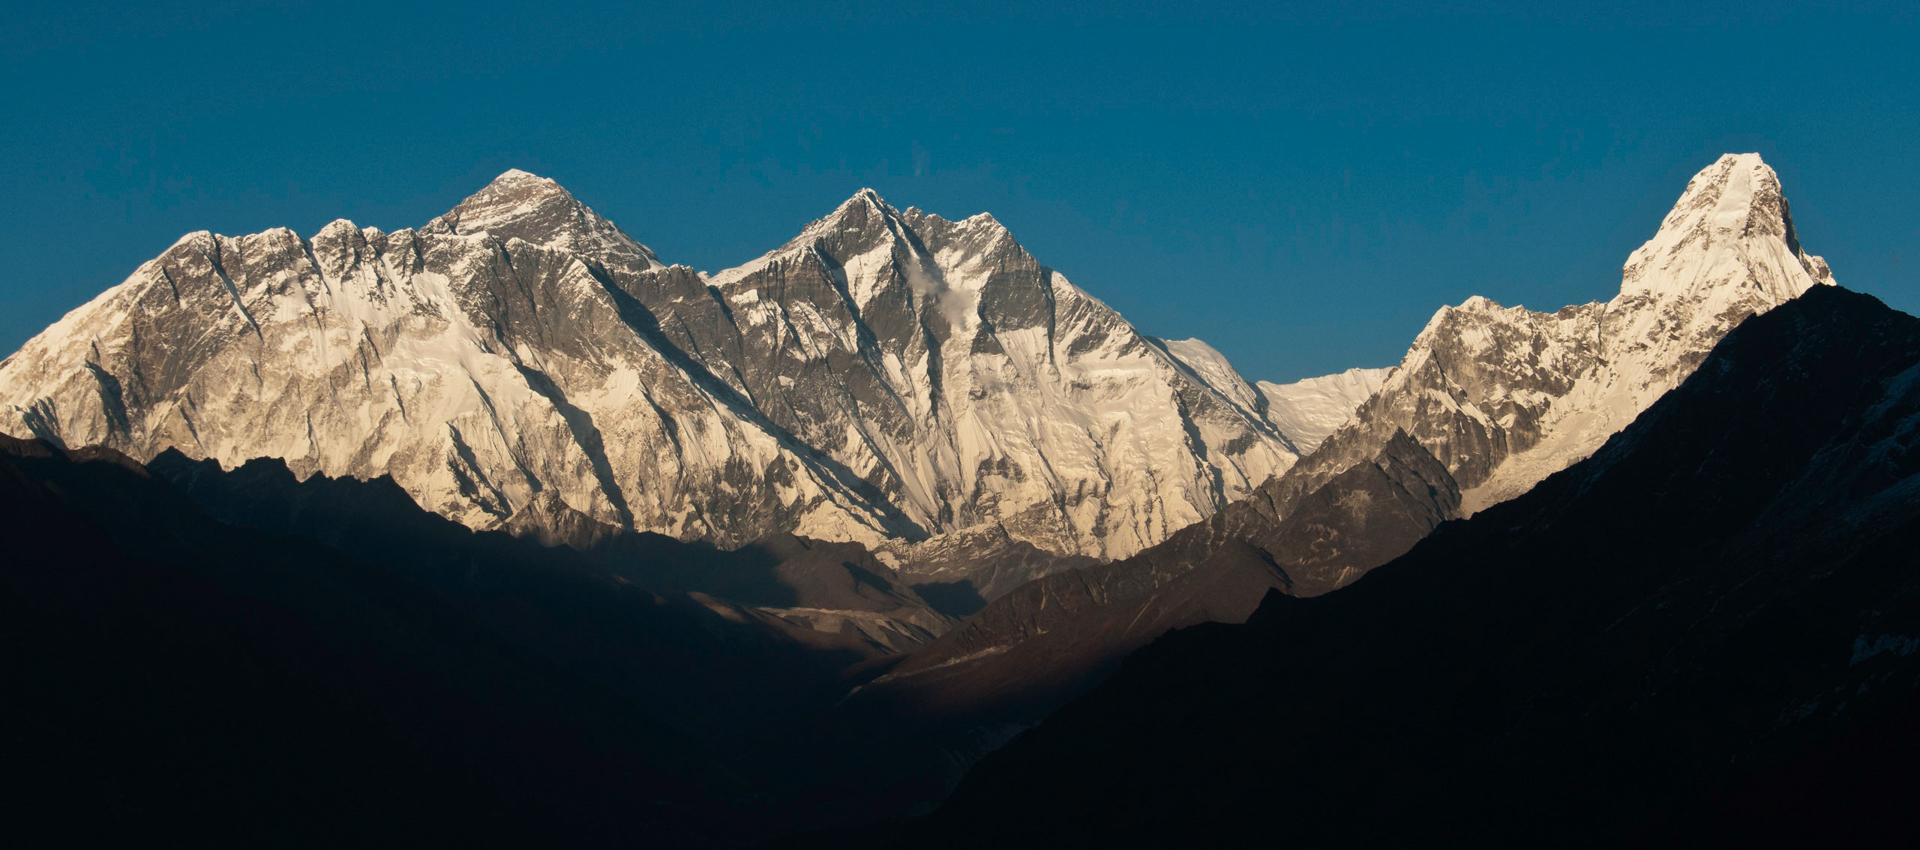 Trek panorama sur l'Everest